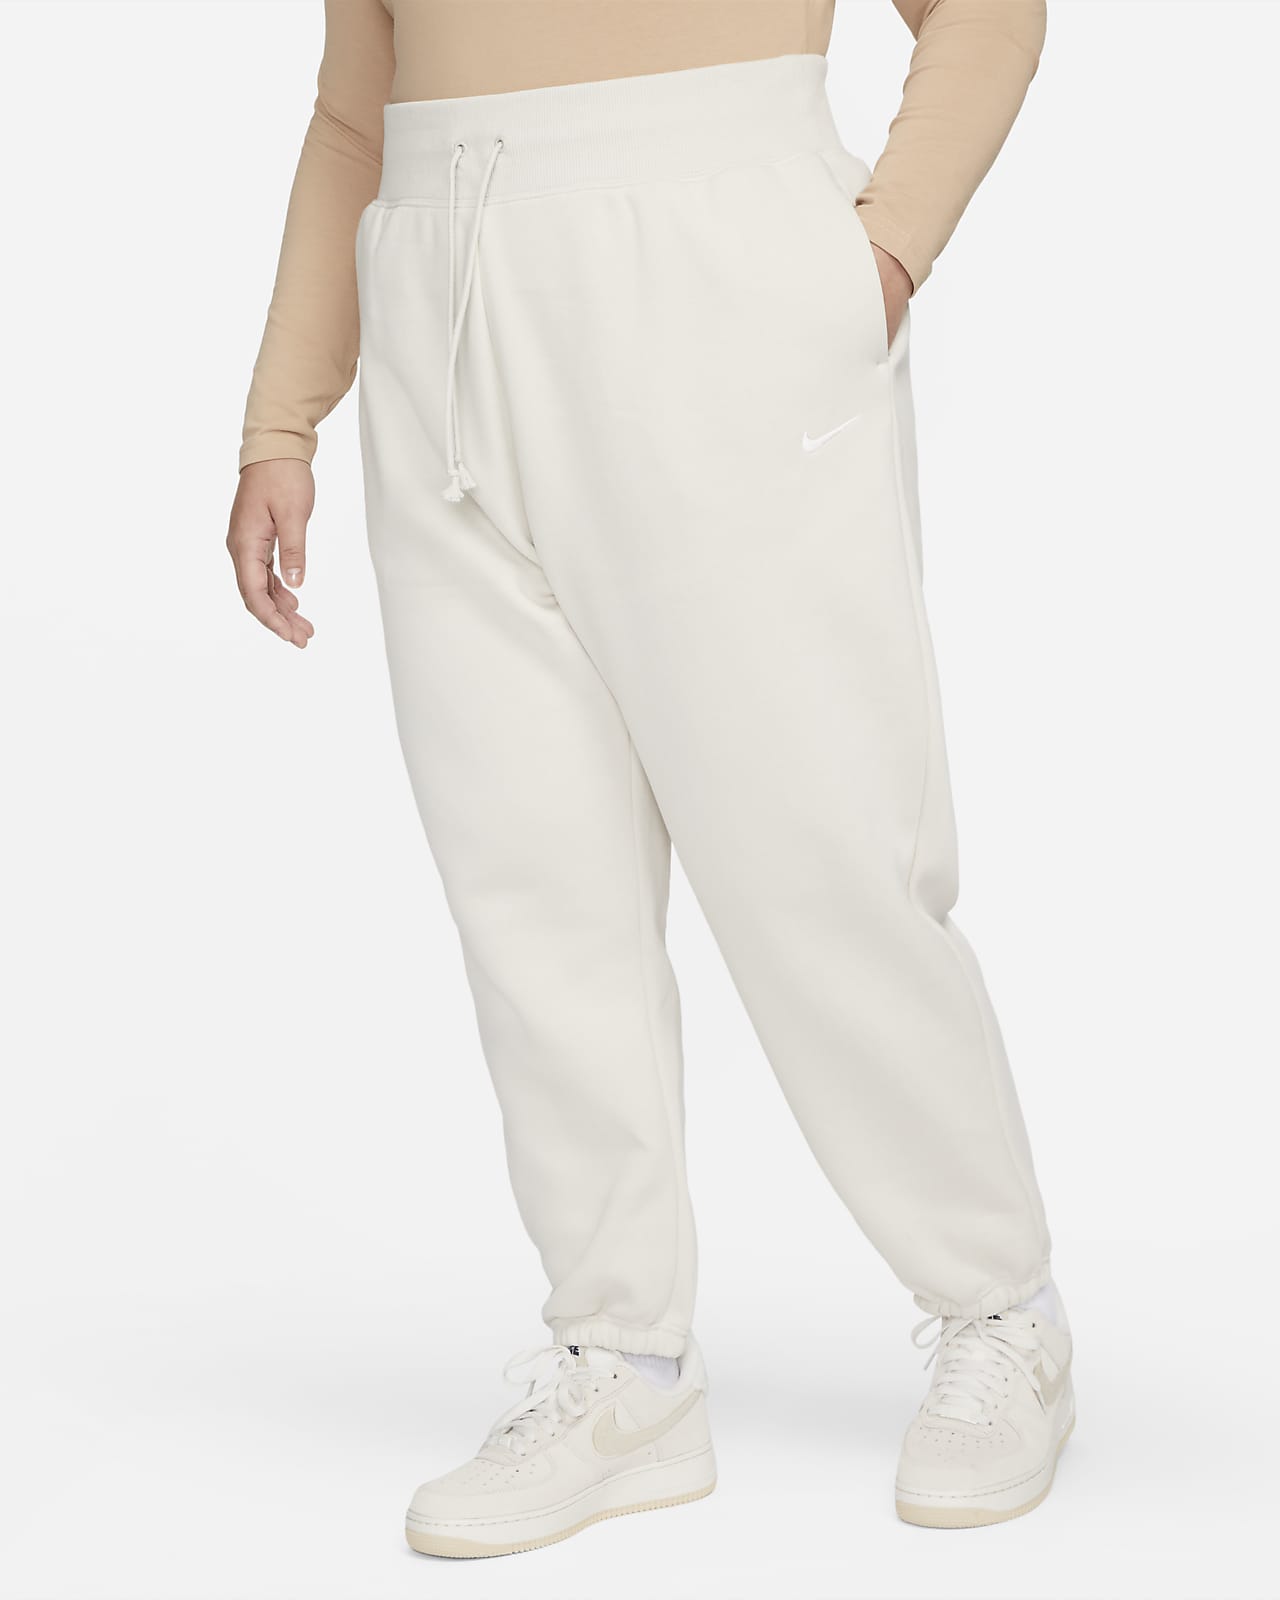 Pants de entrenamiento oversized de cintura alta para mujer (talla grande) Nike Sportswear Phoenix Fleece